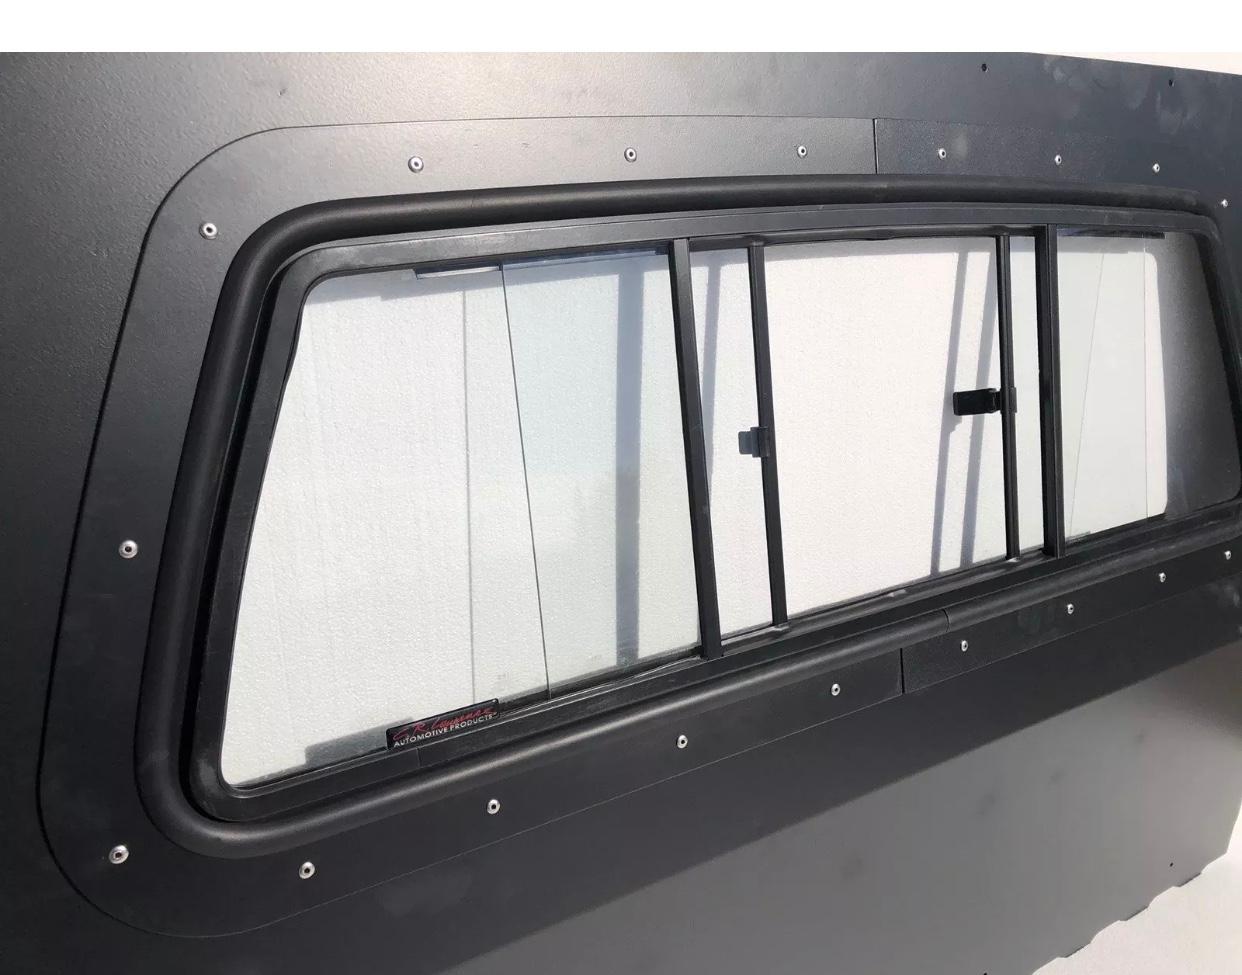 Iron Curtain (steel) with Sliding Window (2 door or 4 door vehicle)